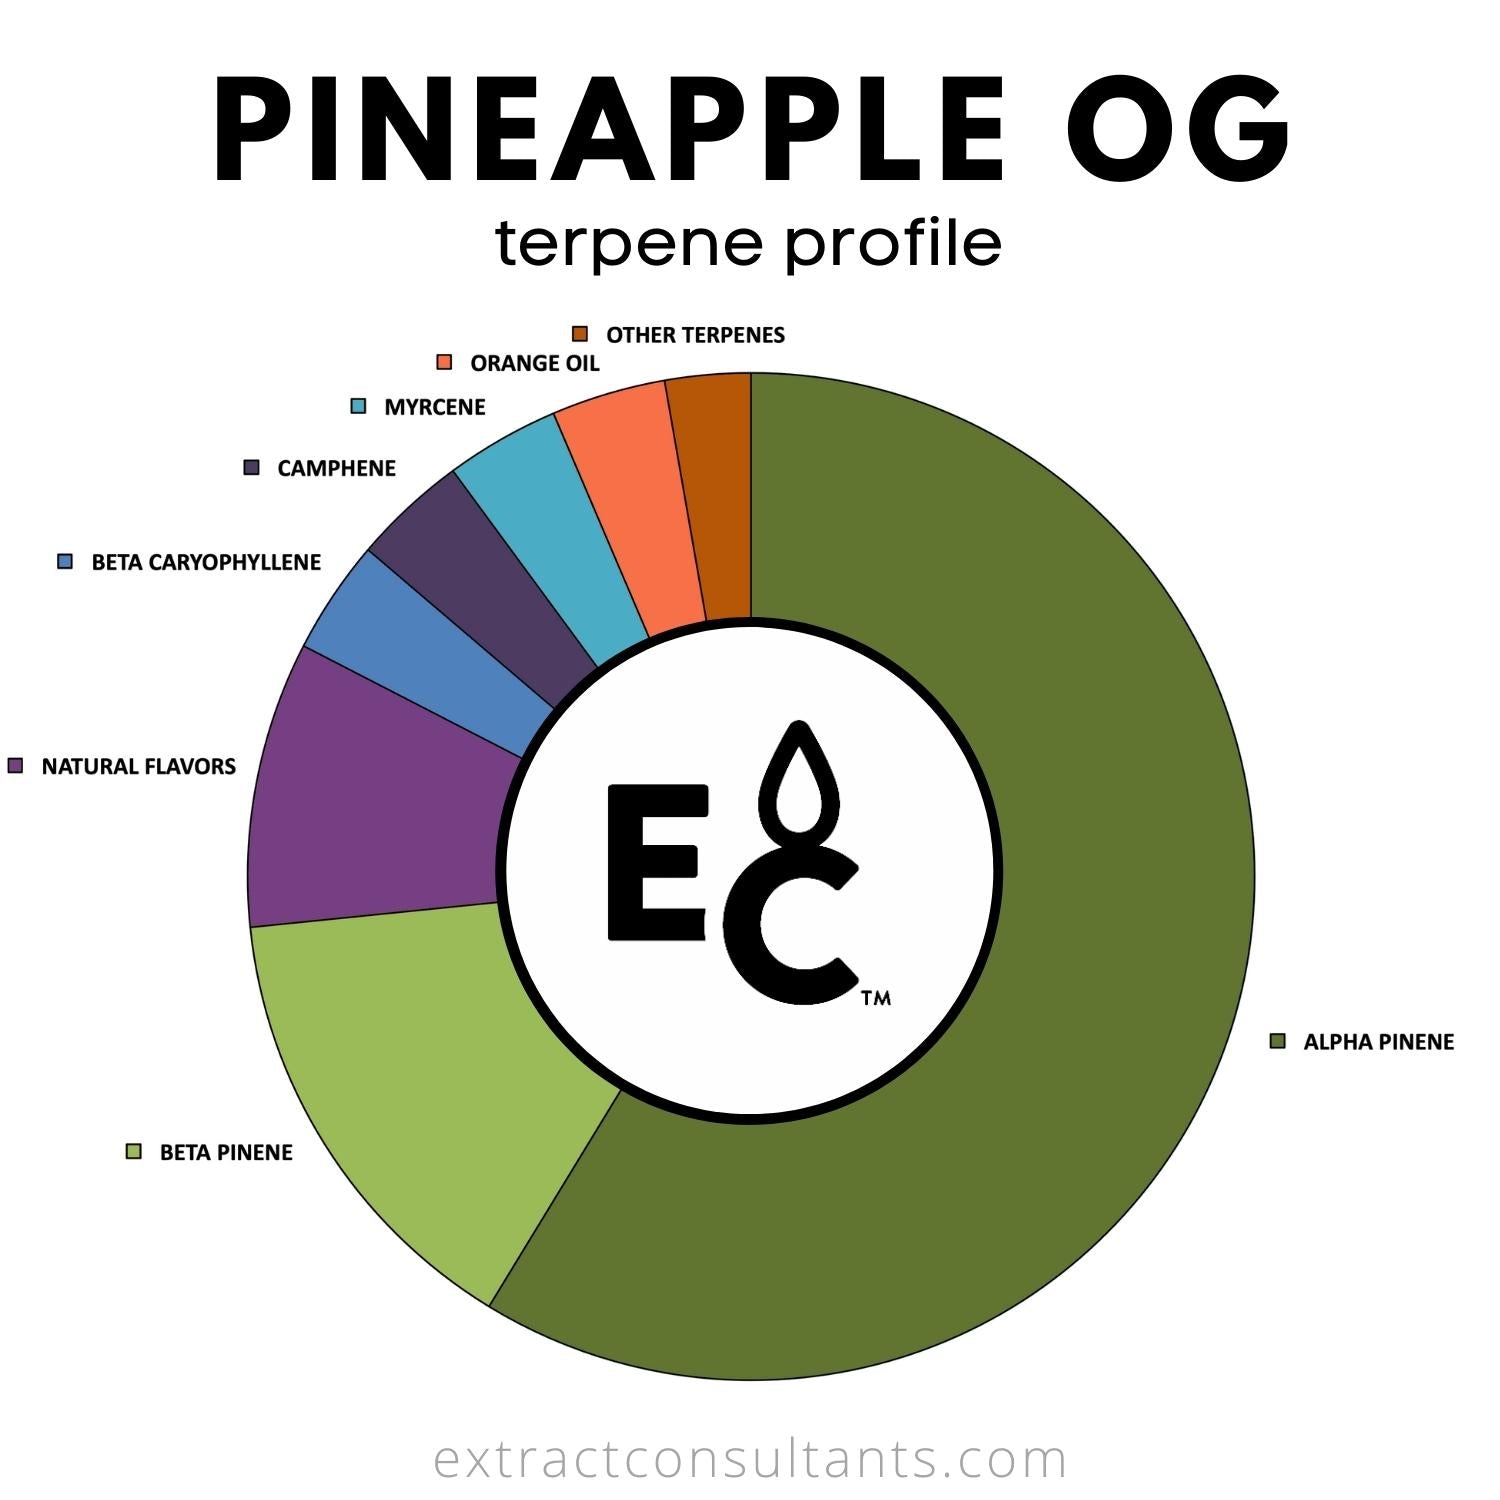 Pineapple OG Terpene Profile